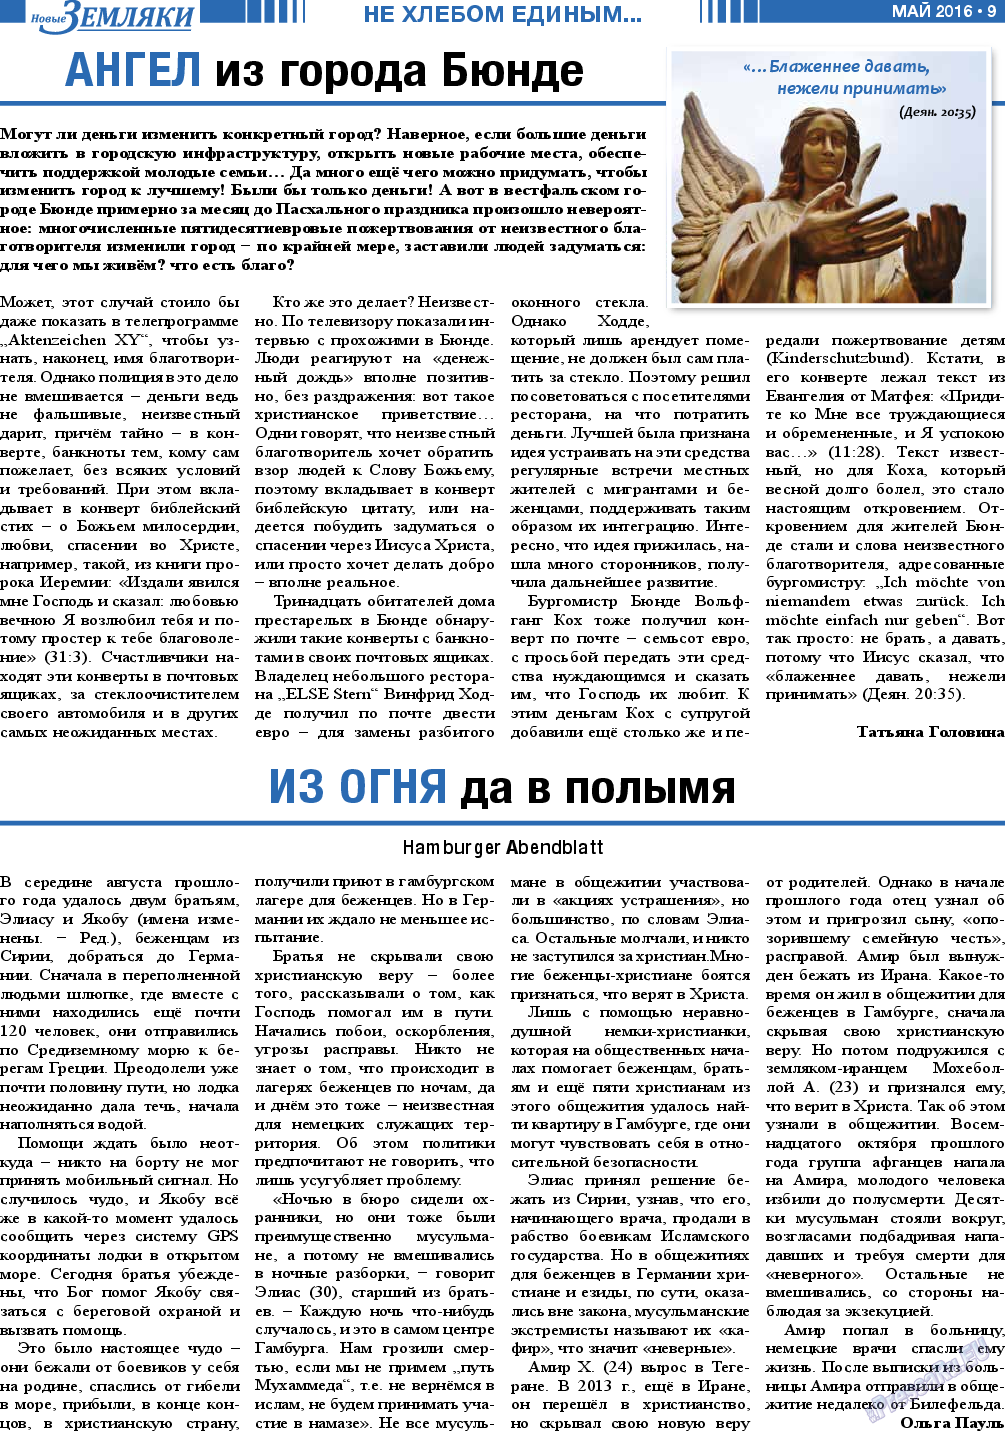 Новые Земляки, газета. 2016 №5 стр.9